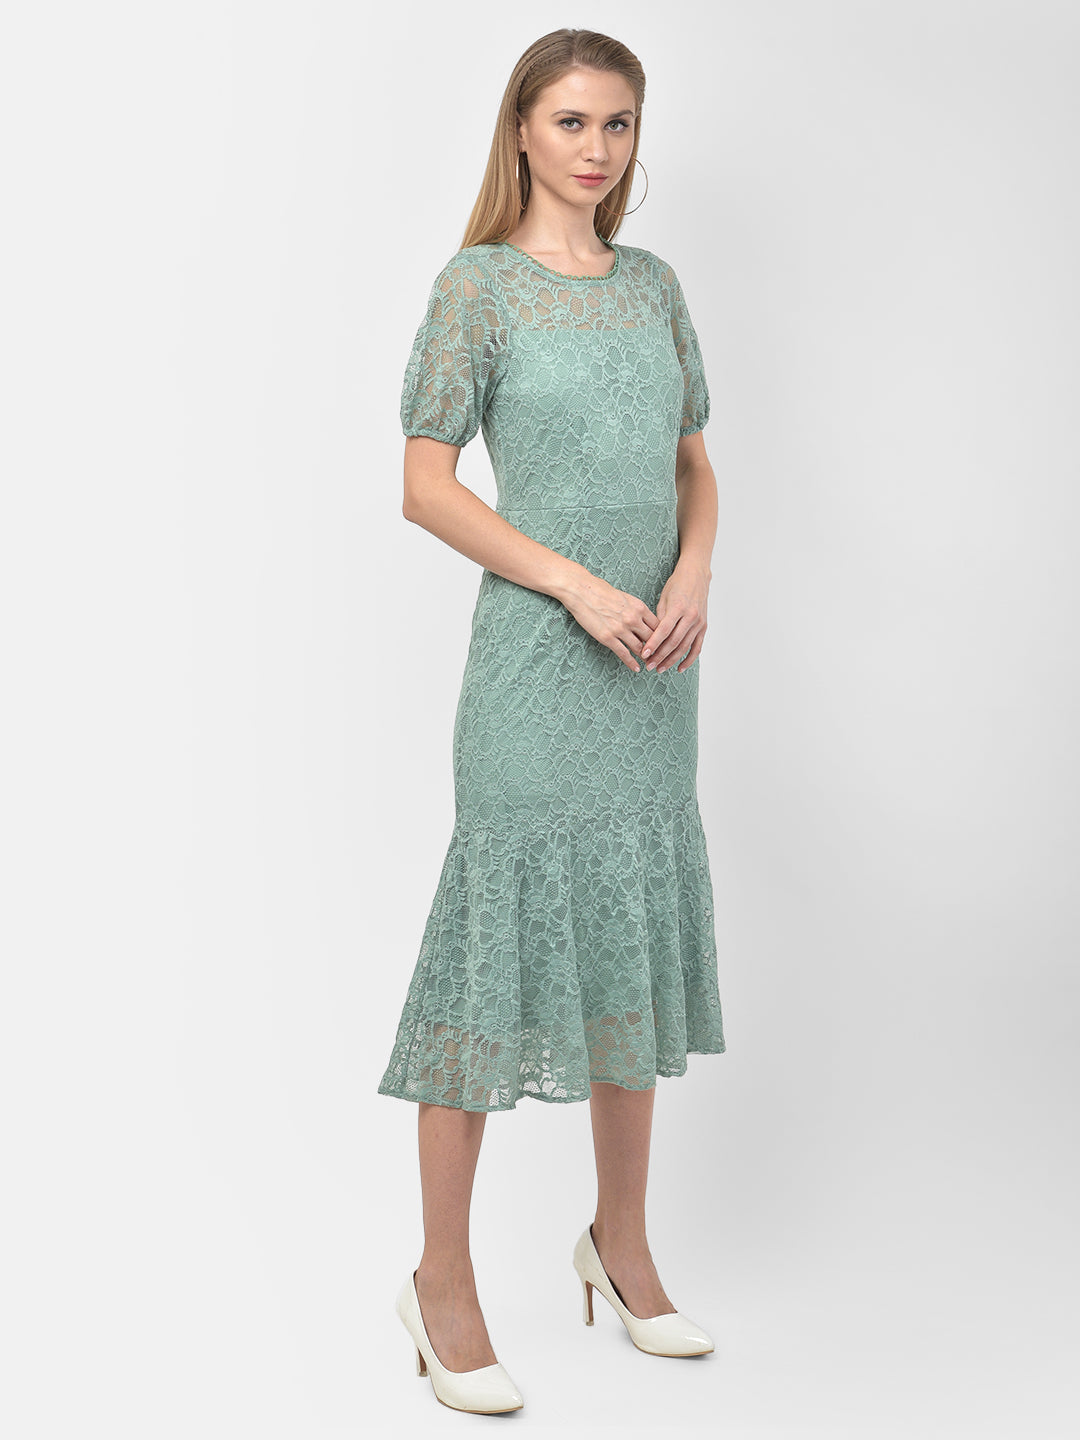 Green Half Sleeve A-Line Long Dress